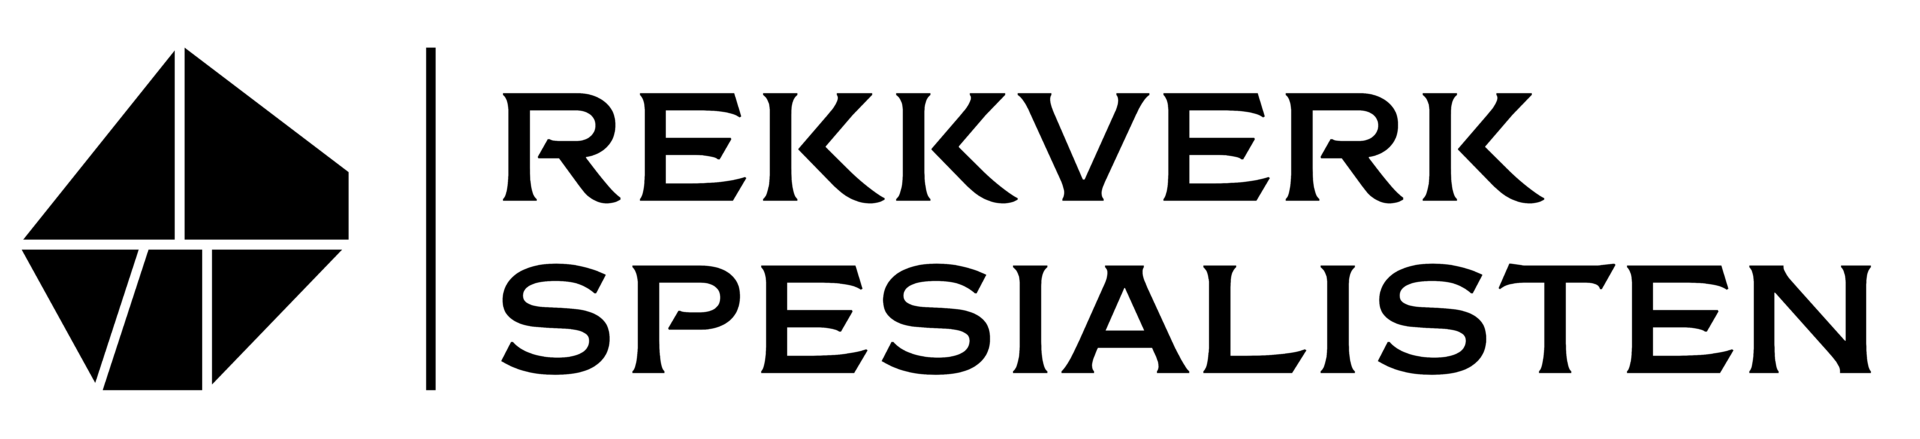 Rekkverkspesialisten logo